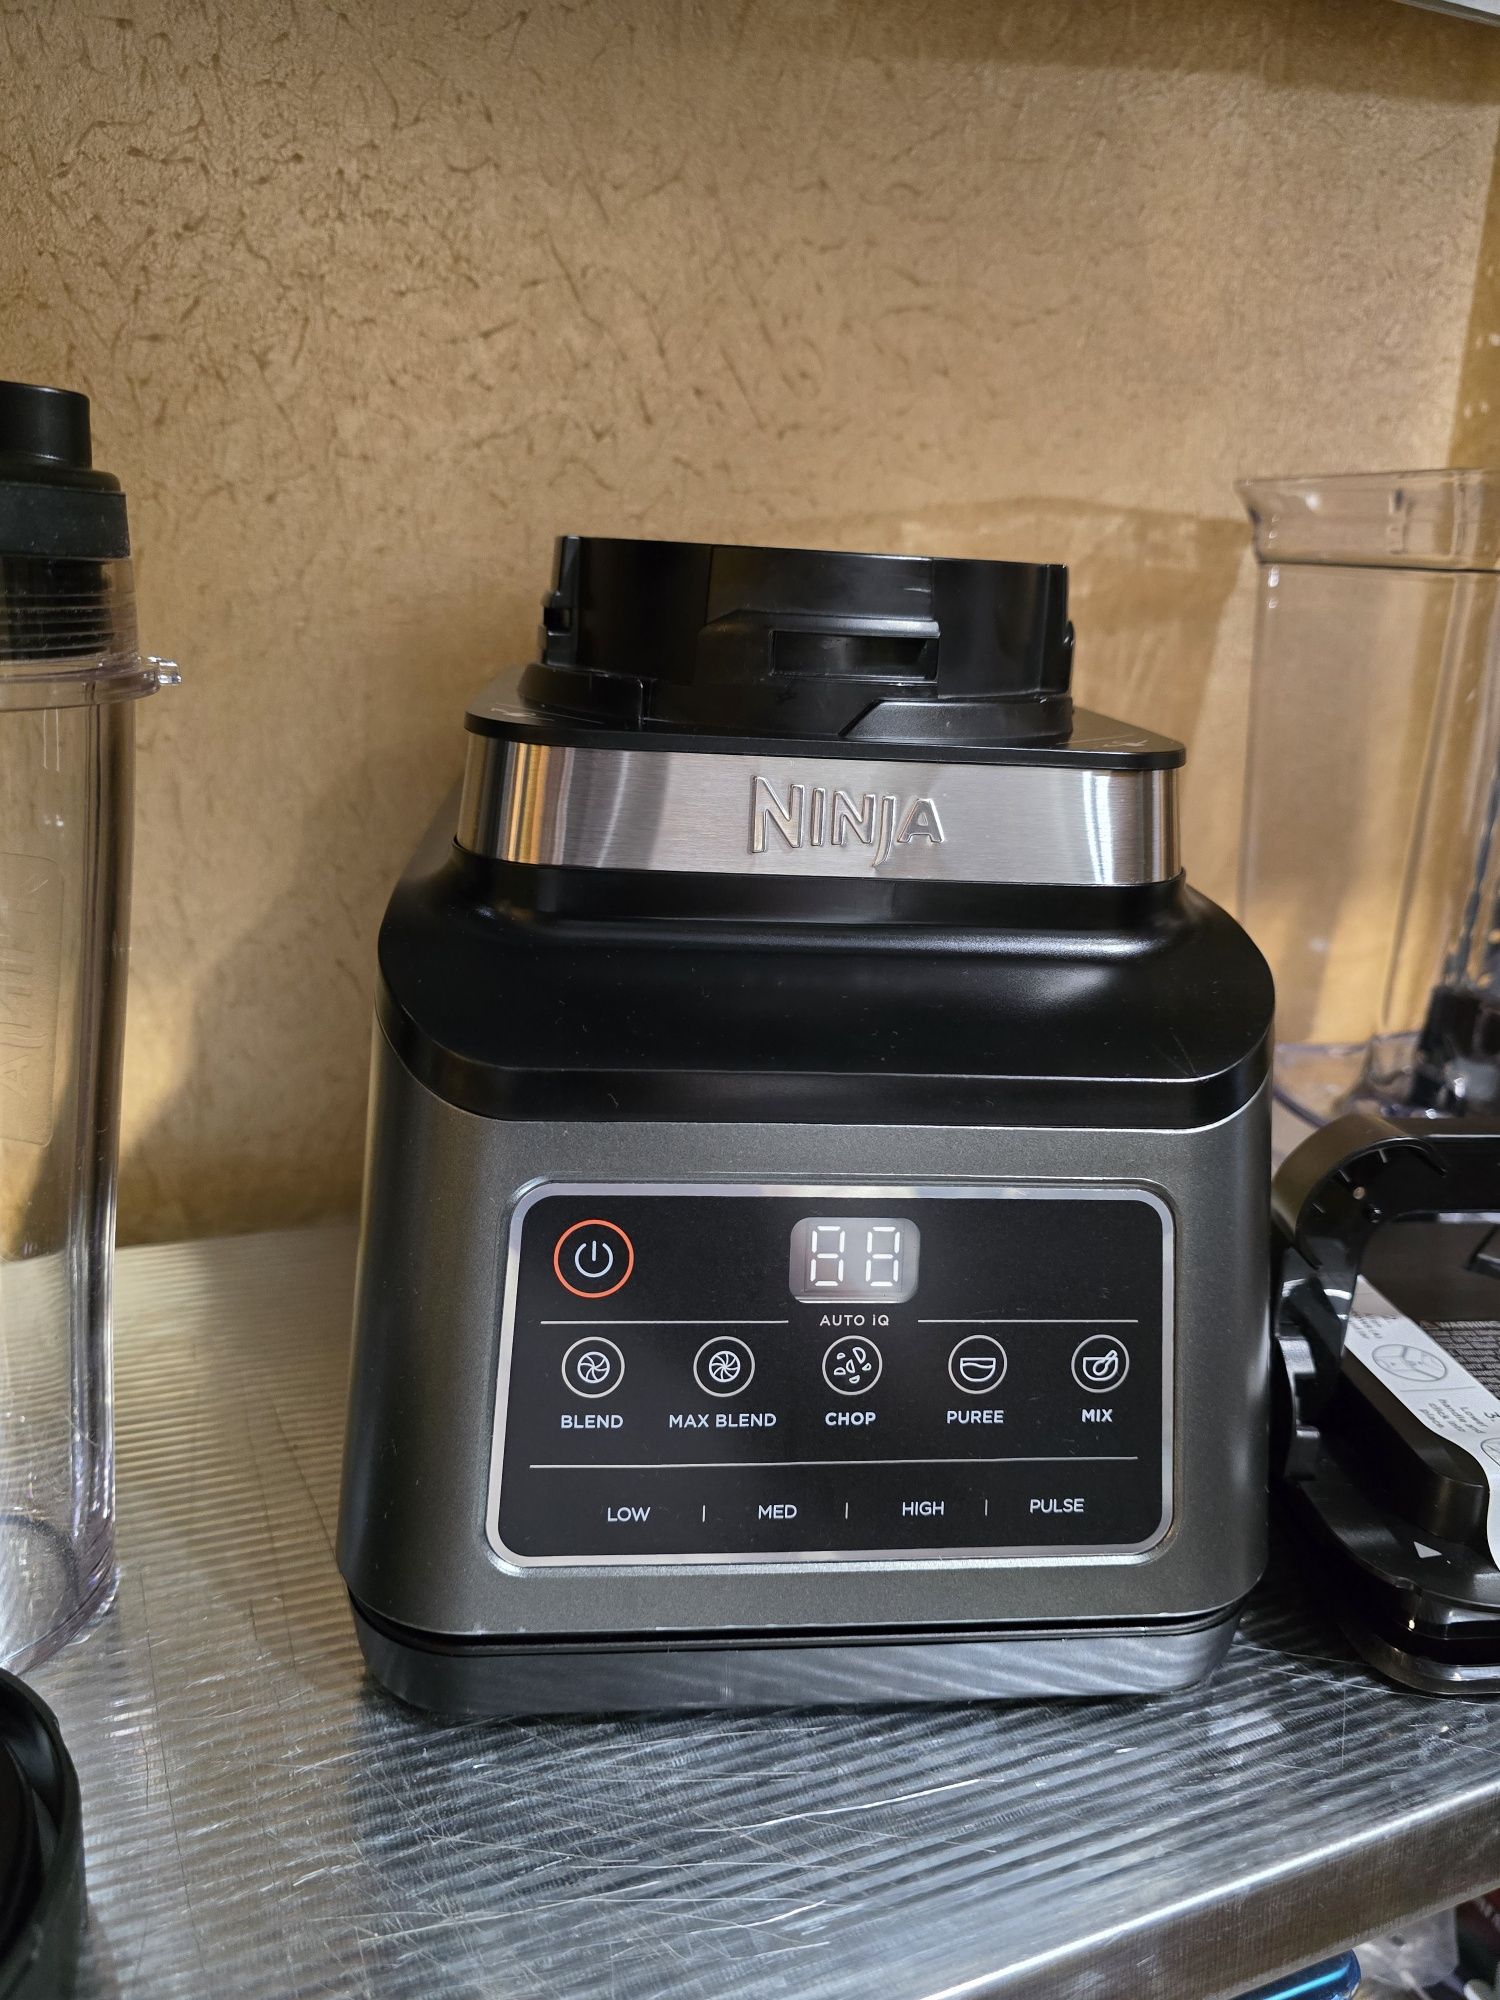 КАТО НОВ!!! Кухненски робот Ninja 3-в-1 с 5 програми Auto-iQ